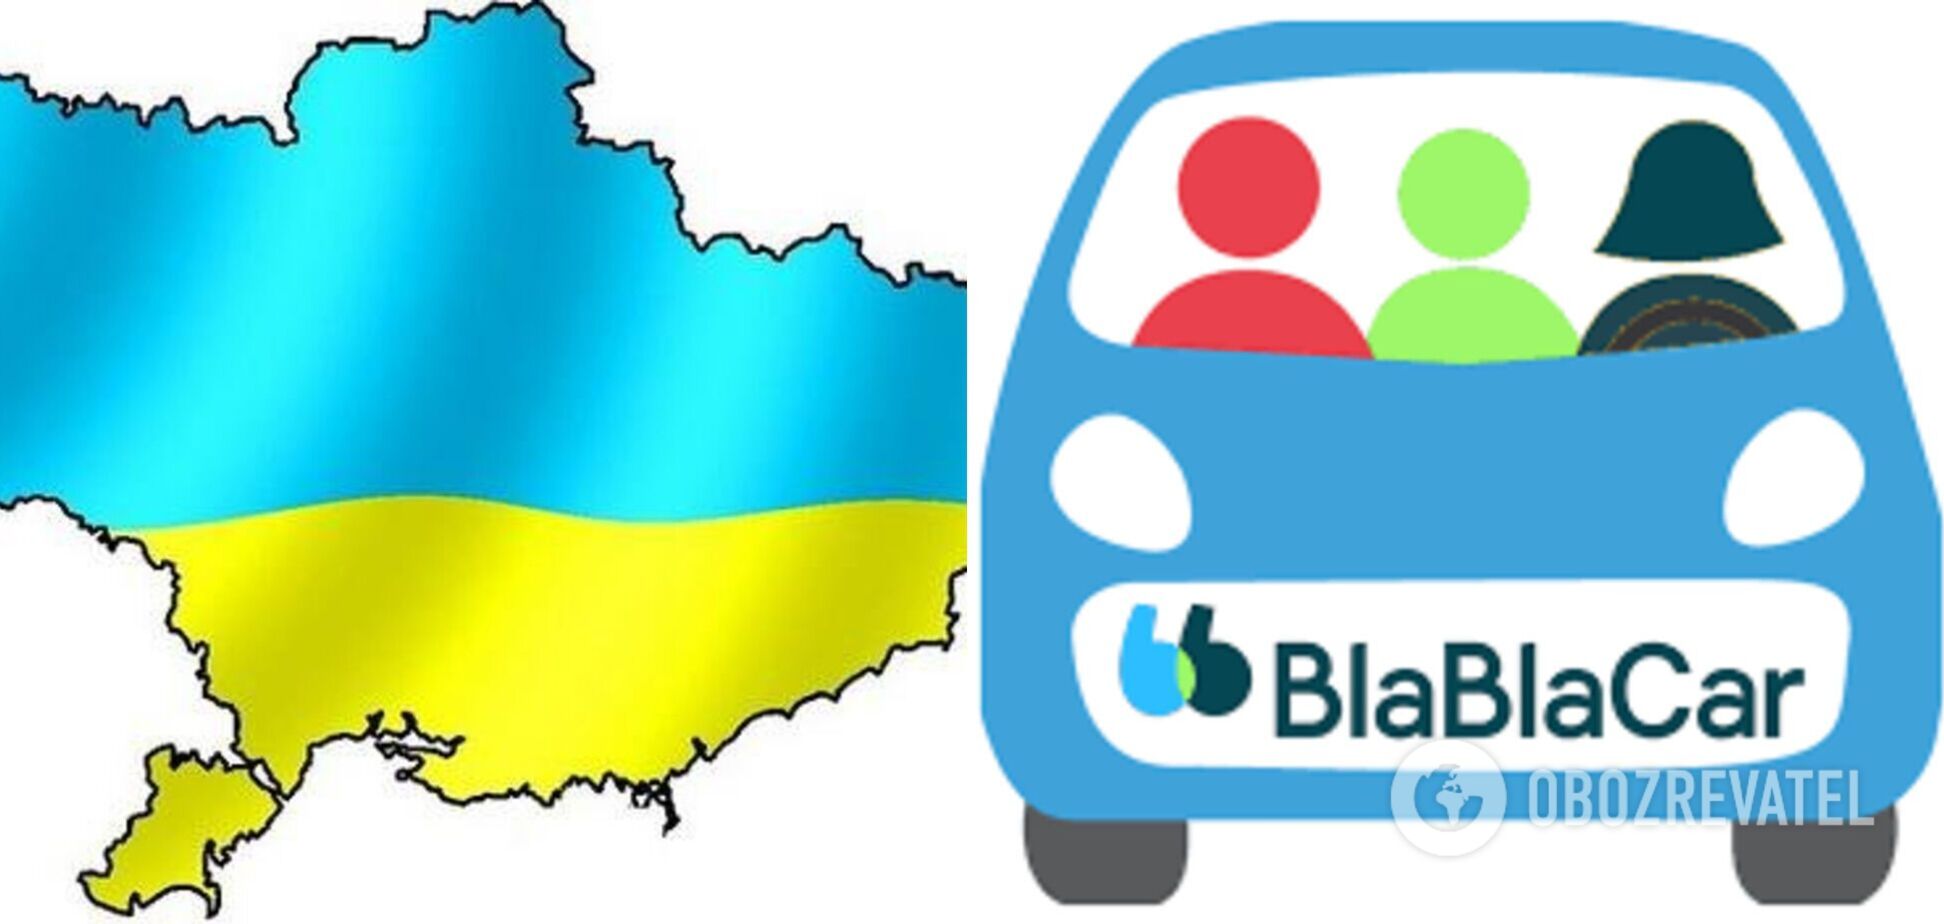 BlaBlaCar назвав рекламу з картою України без Криму 'неприємною помилкою': опубліковано заяву